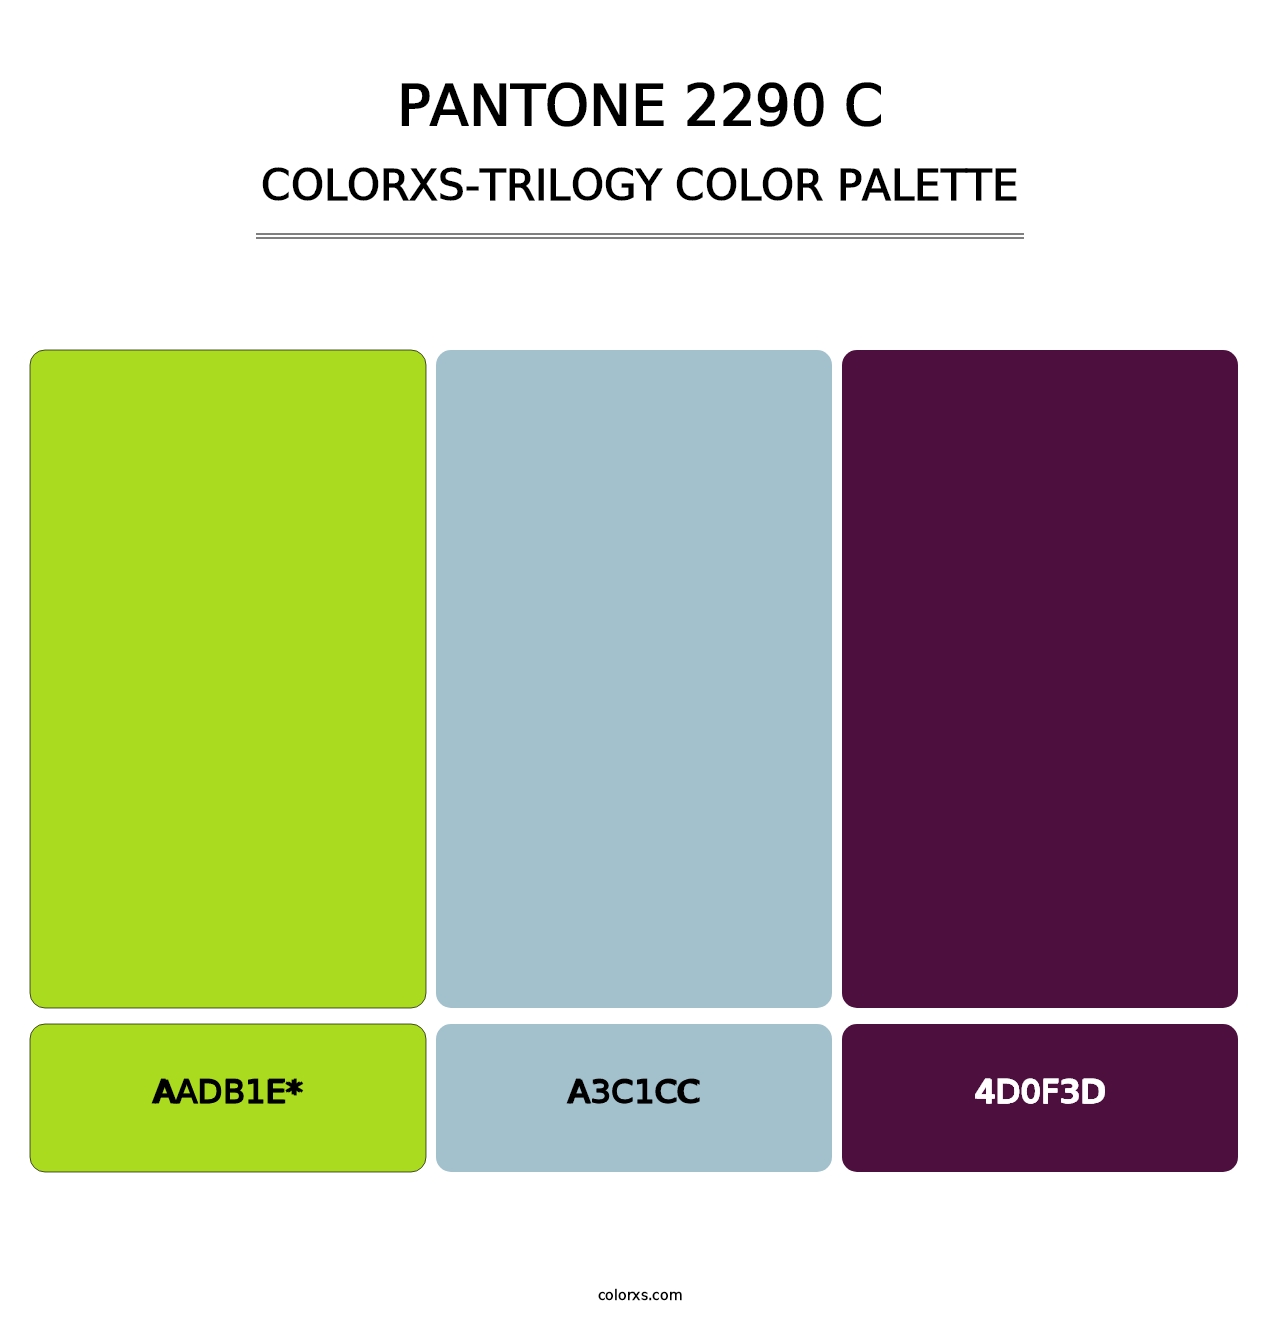 PANTONE 2290 C - Colorxs Trilogy Palette